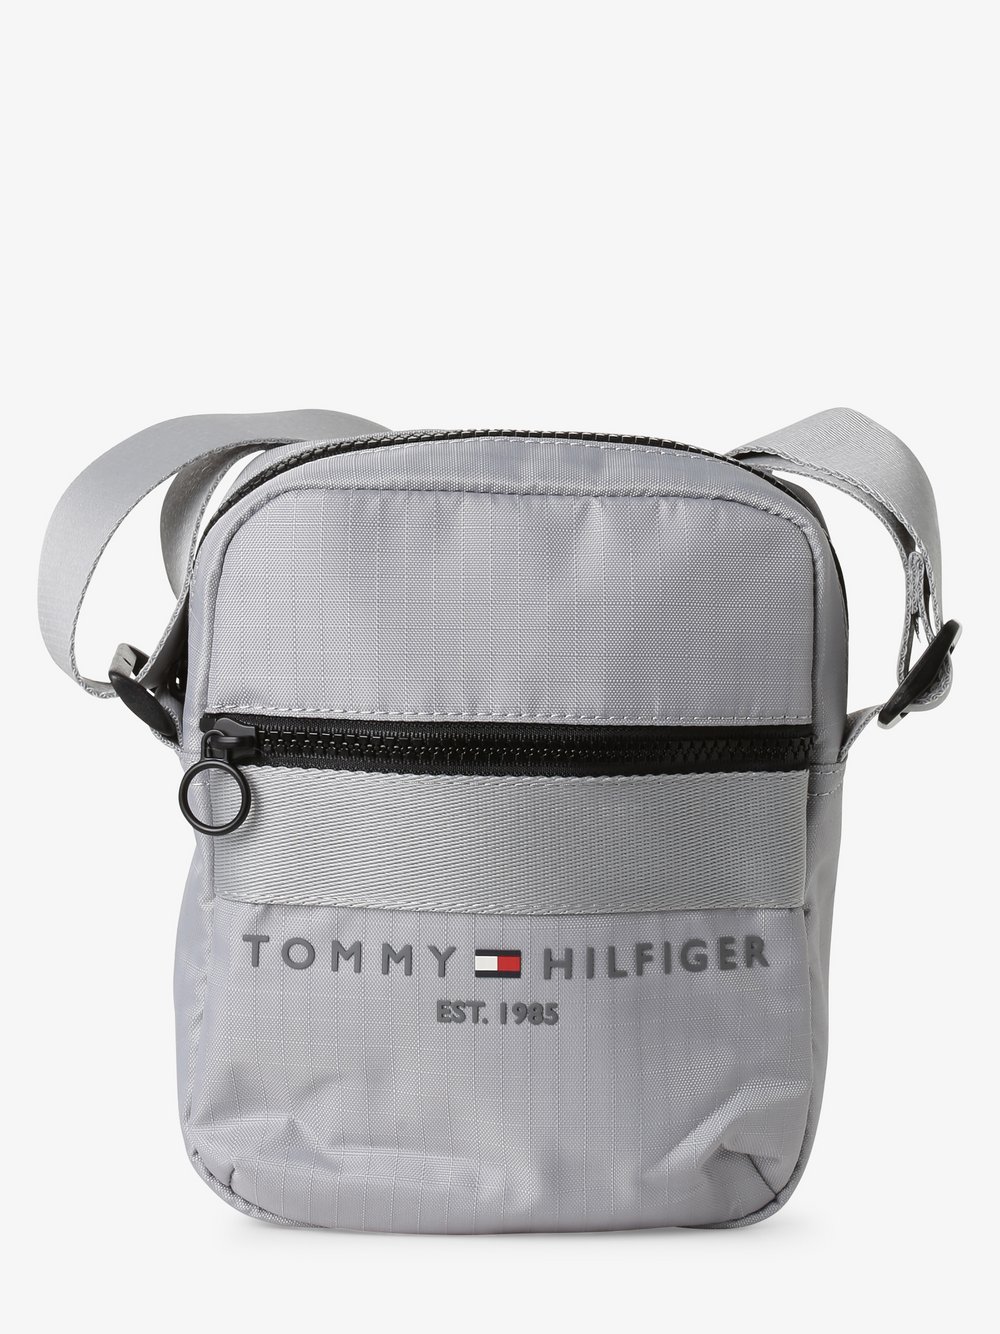 Tommy Hilfiger - Męska torebka na ramię, szary